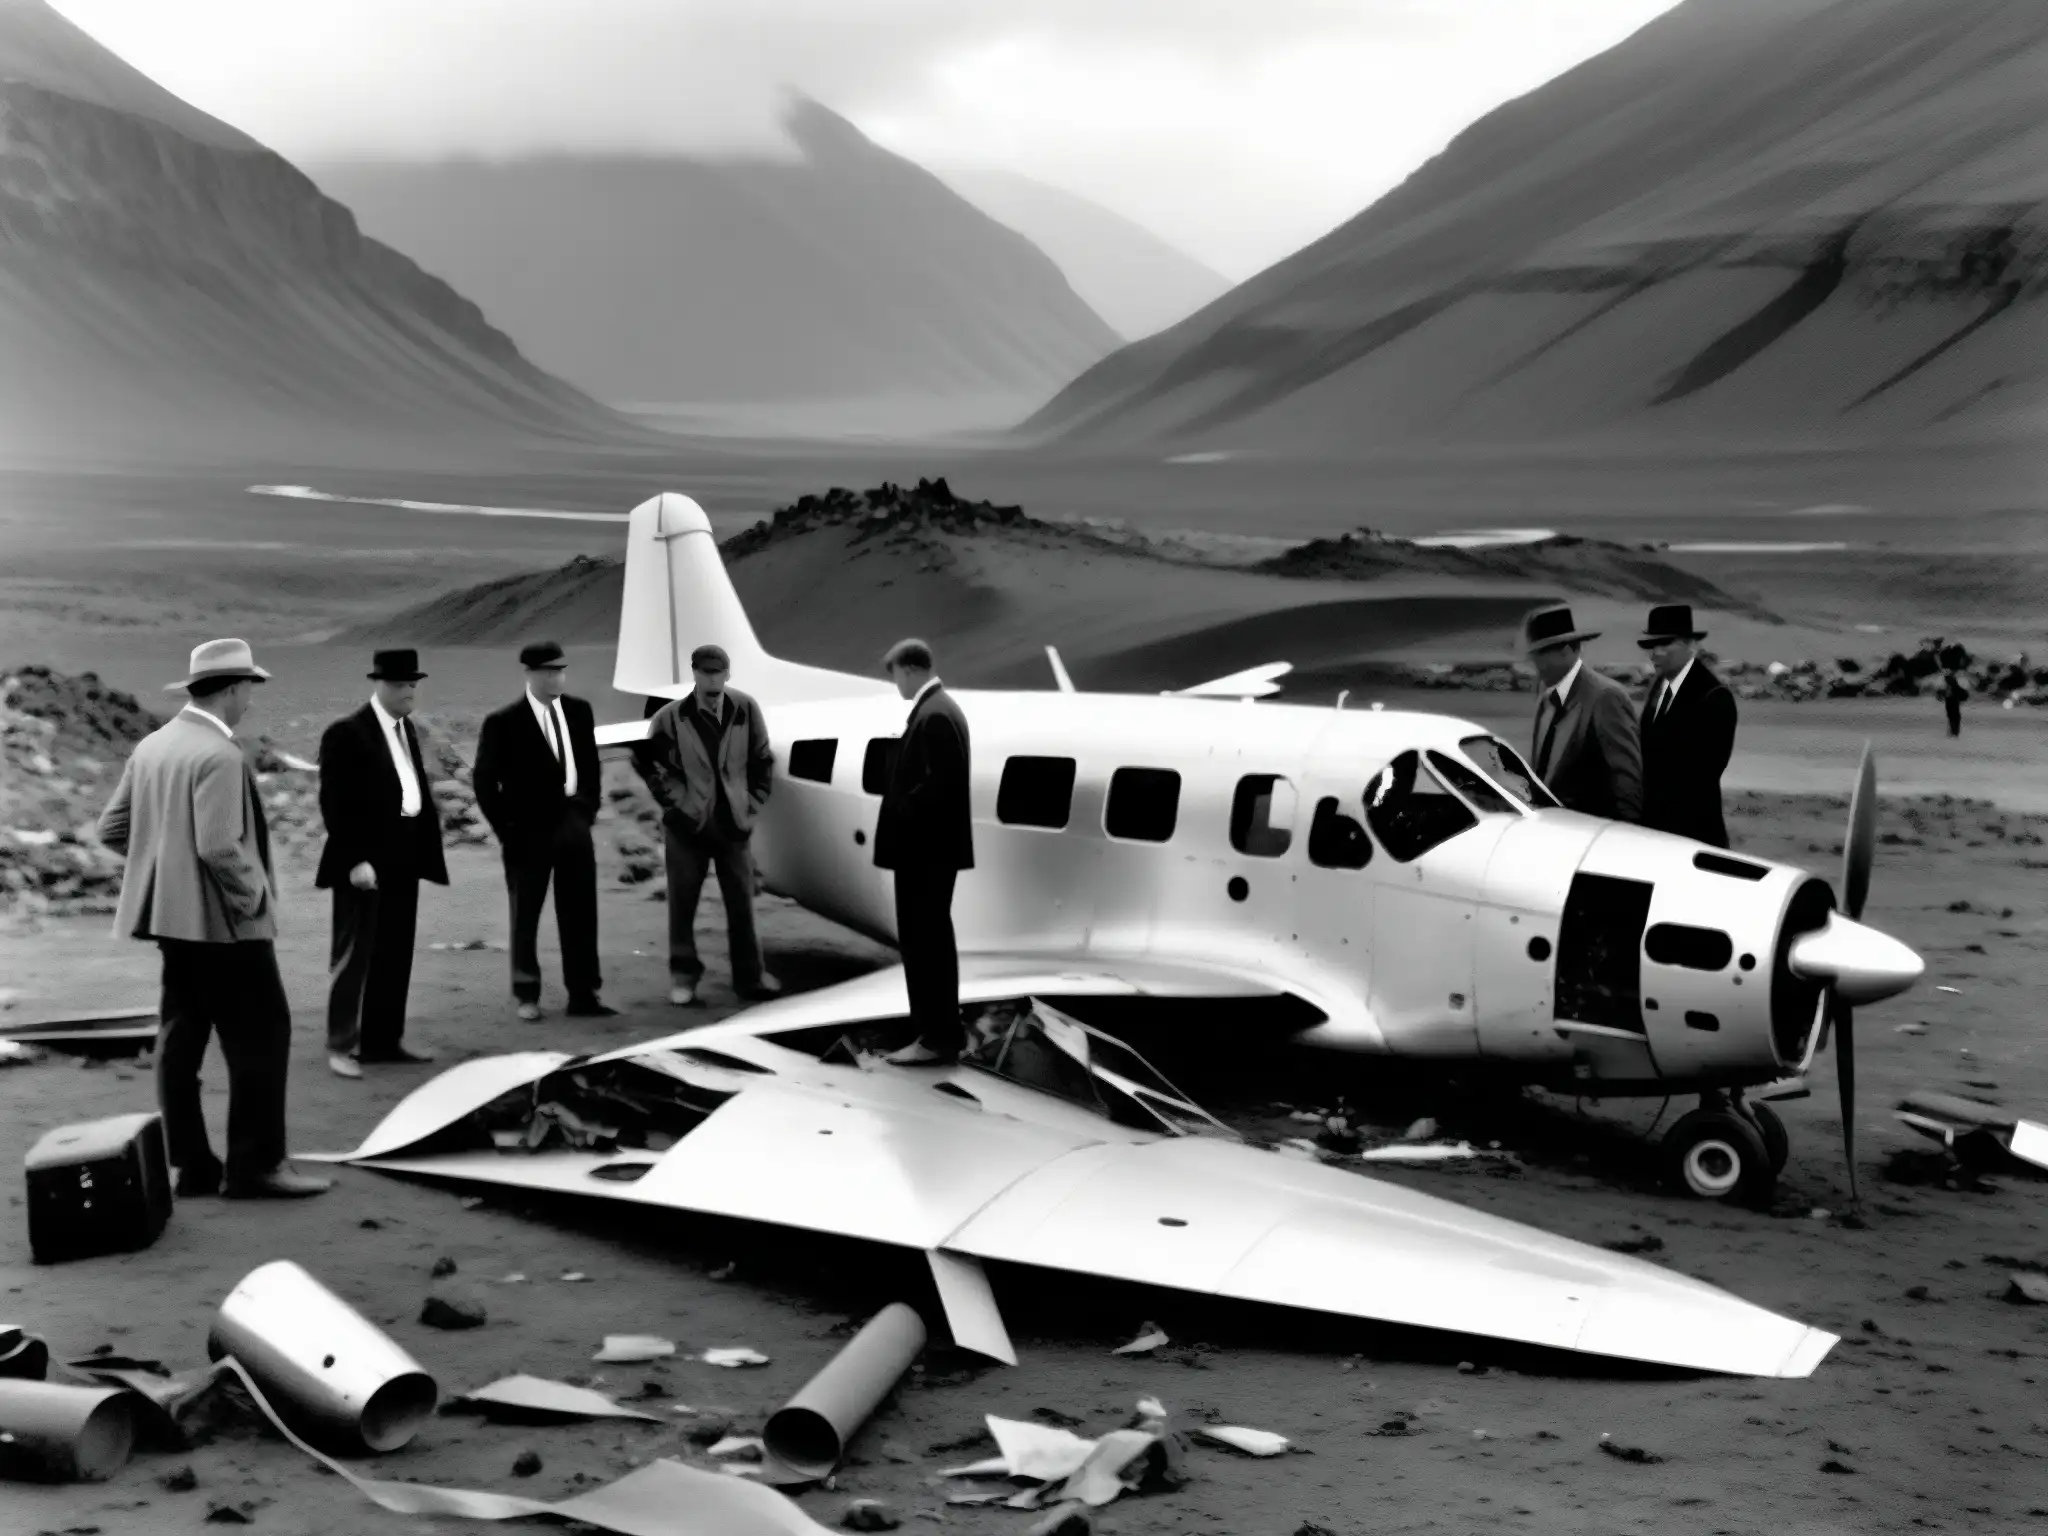 Grupo de investigadores examina los restos de un avión estrellado en un lugar remoto